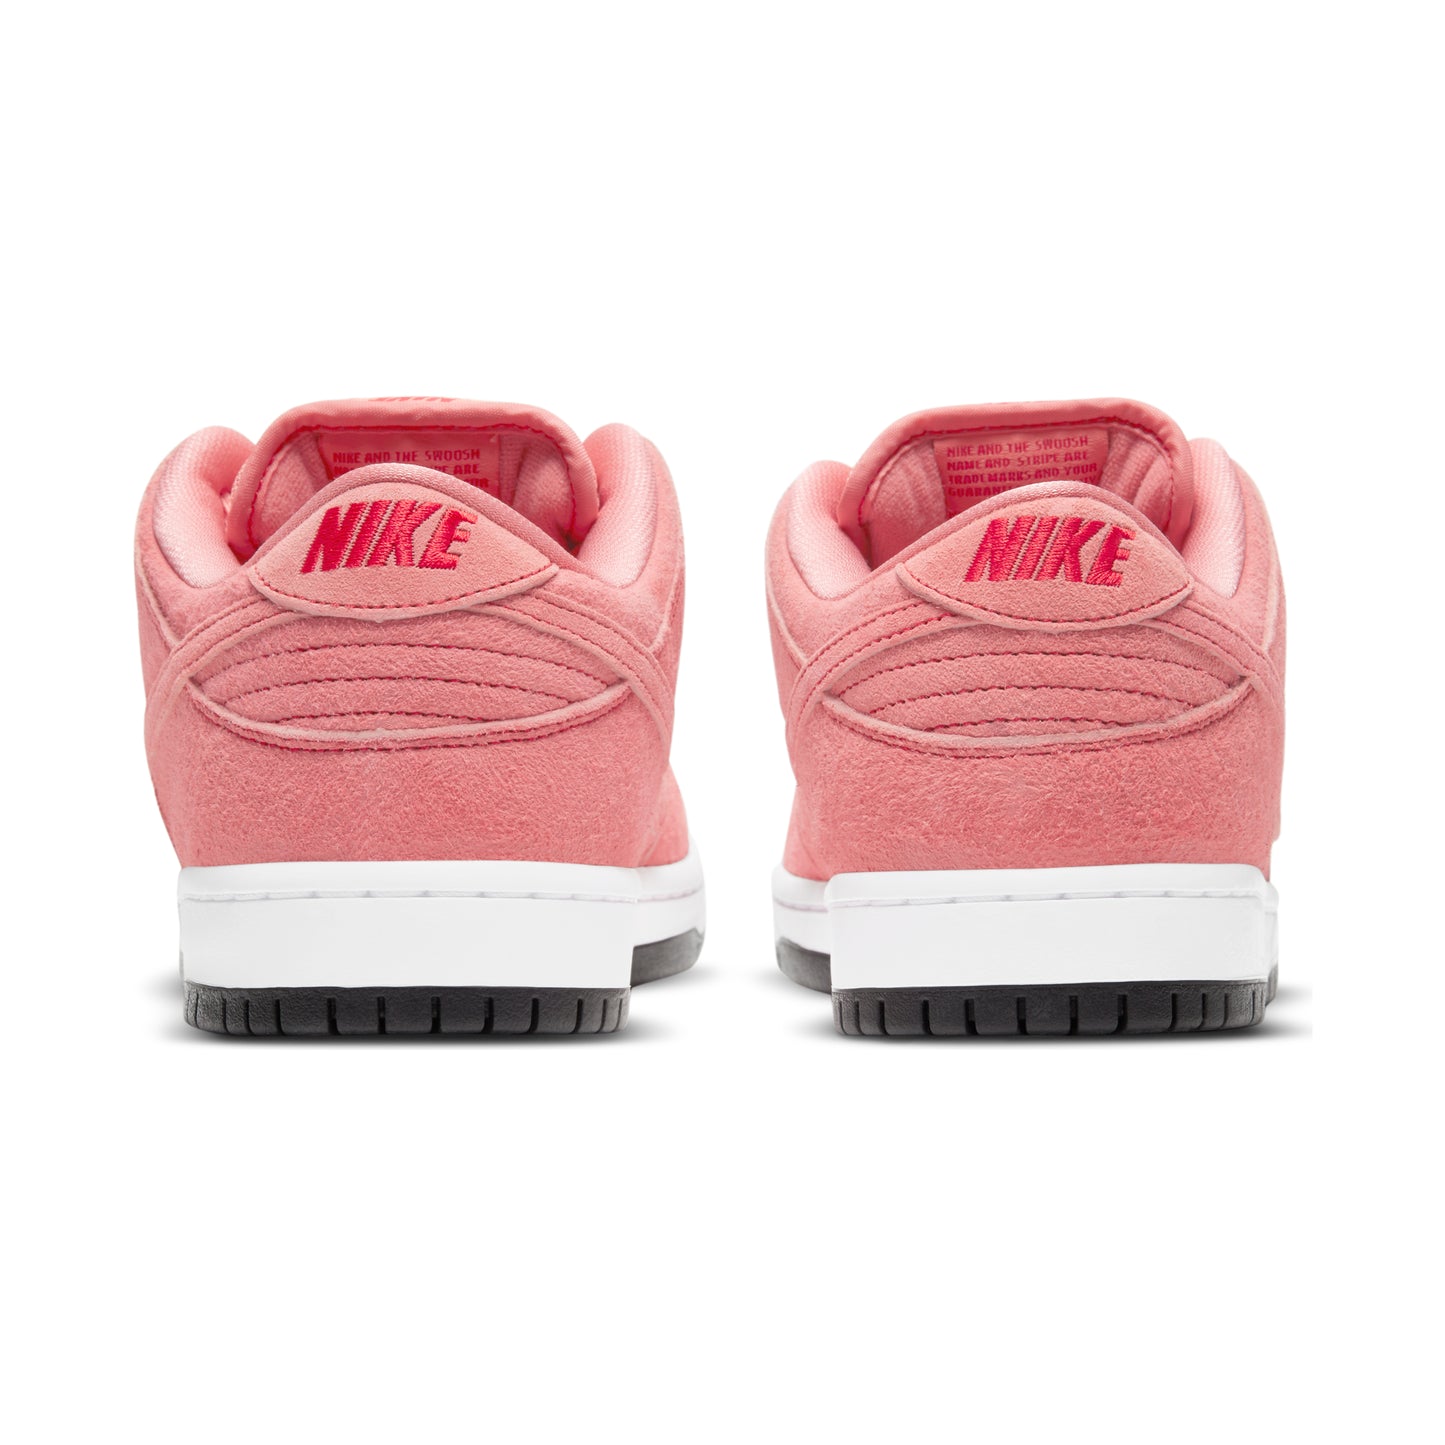 Nike SB Dunk Low Pro "Pink Pig"